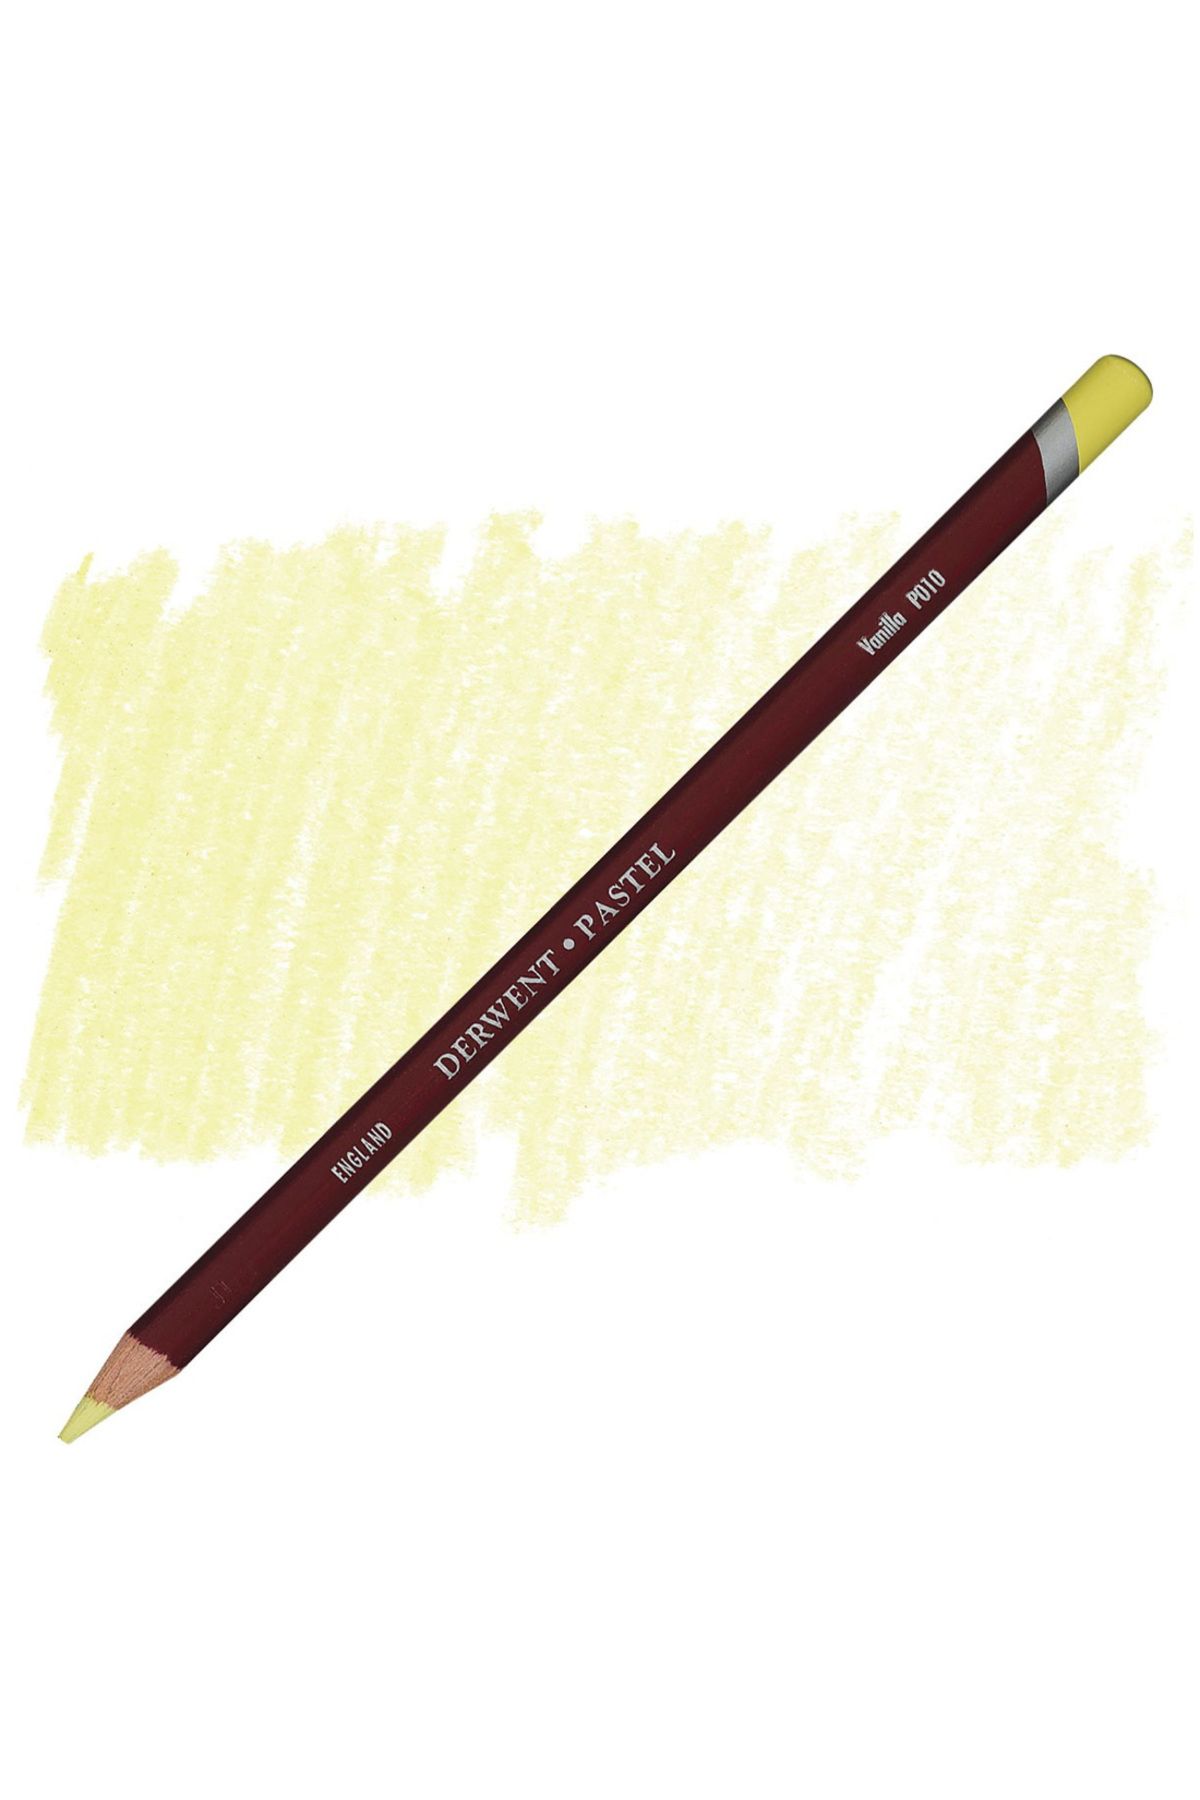 Derwent Pastel Pencil P010 Vanilla